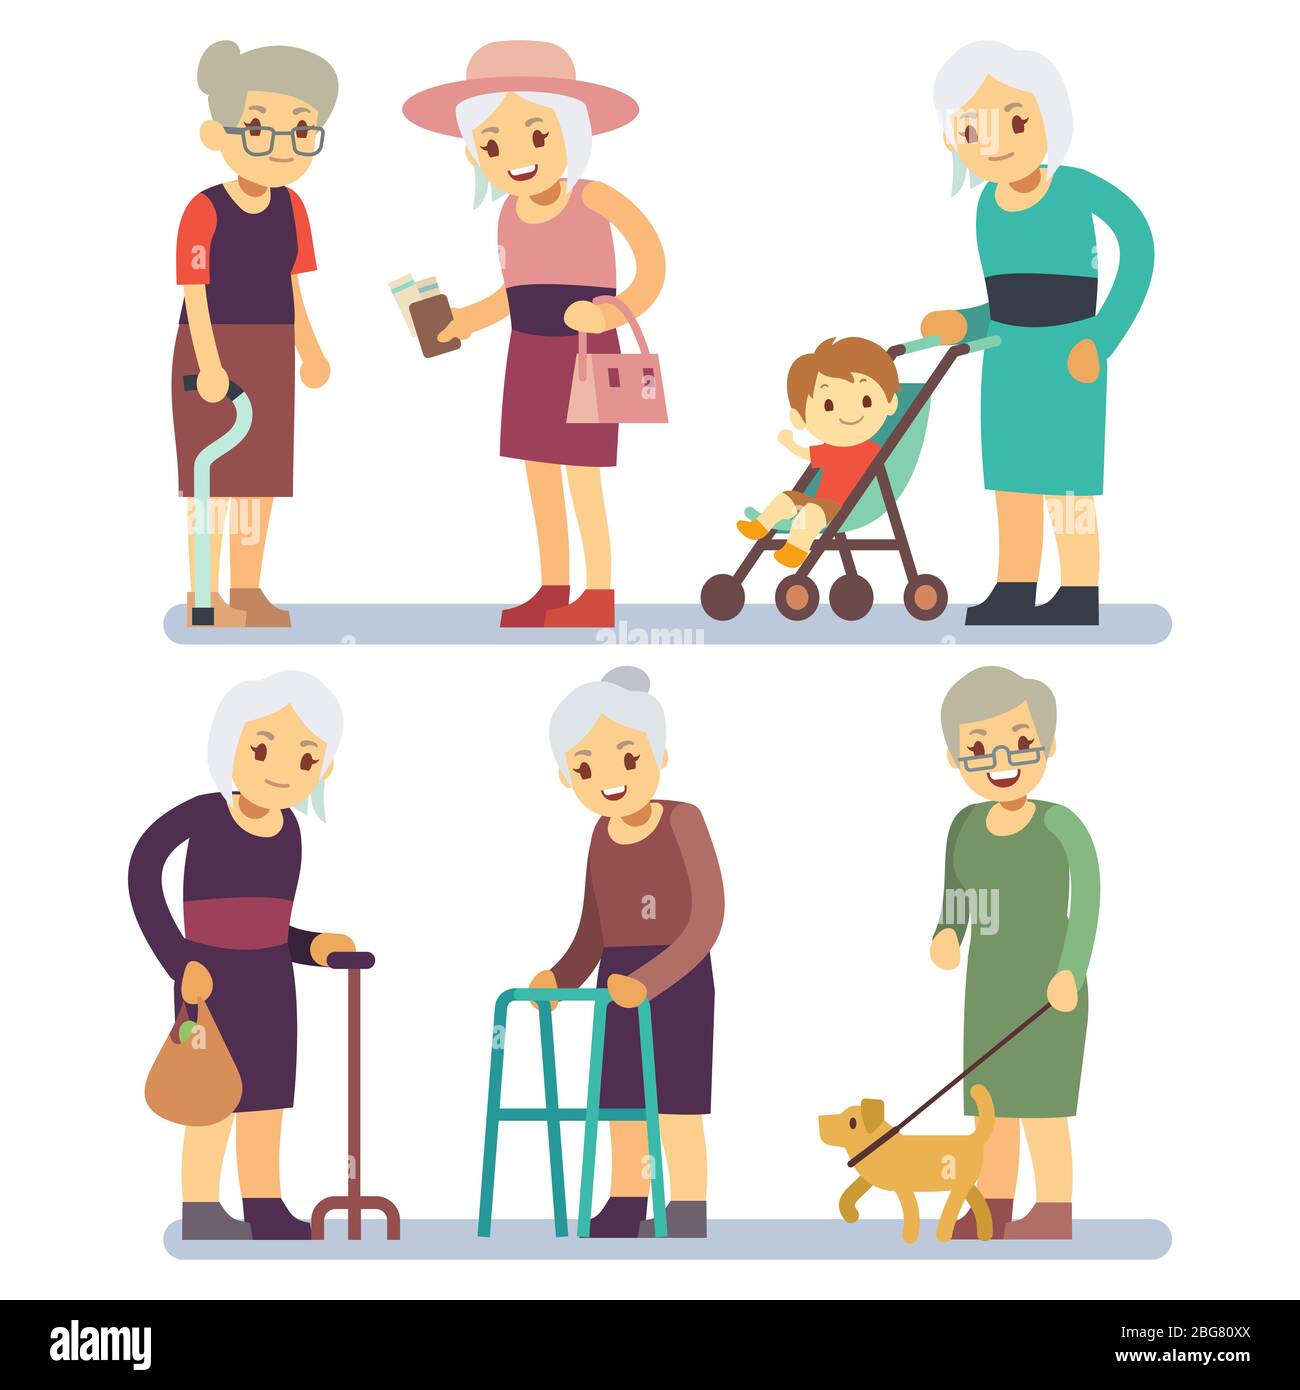 Alte Frauen Cartoon-Charakter gesetzt. Ältere Damen in unterschiedlicher Situation. Ältere Dame weiblich, Charakter mit Hund zu Fuß, verschiedene Rentner Großmutter krank Stock Vektor